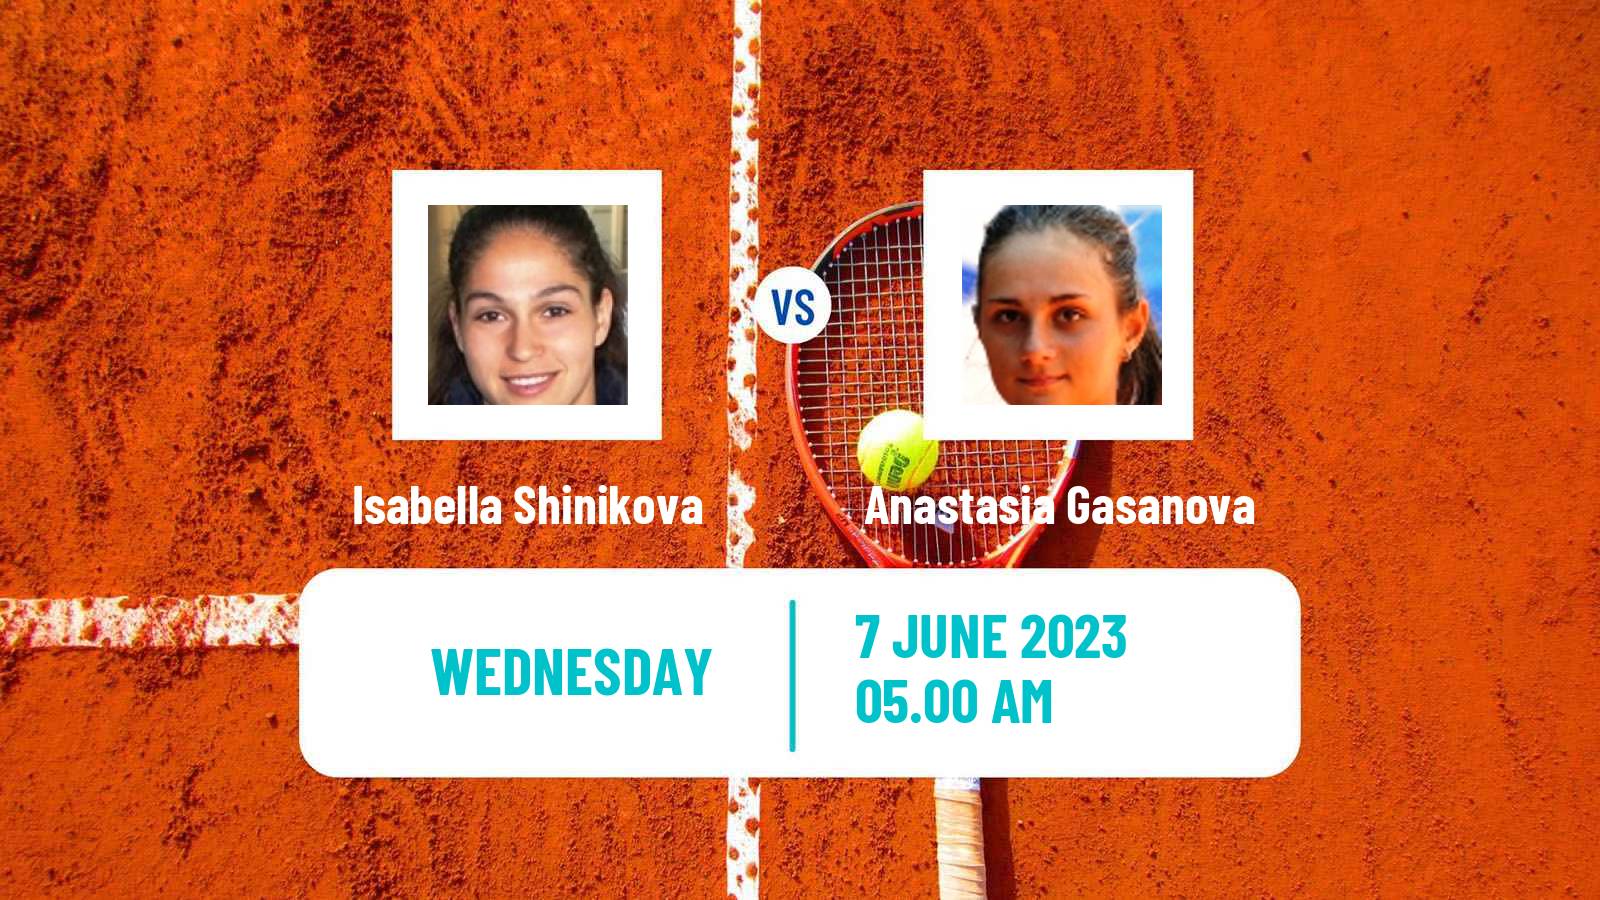 Tennis ITF W40 La Marsa Women Isabella Shinikova - Anastasia Gasanova